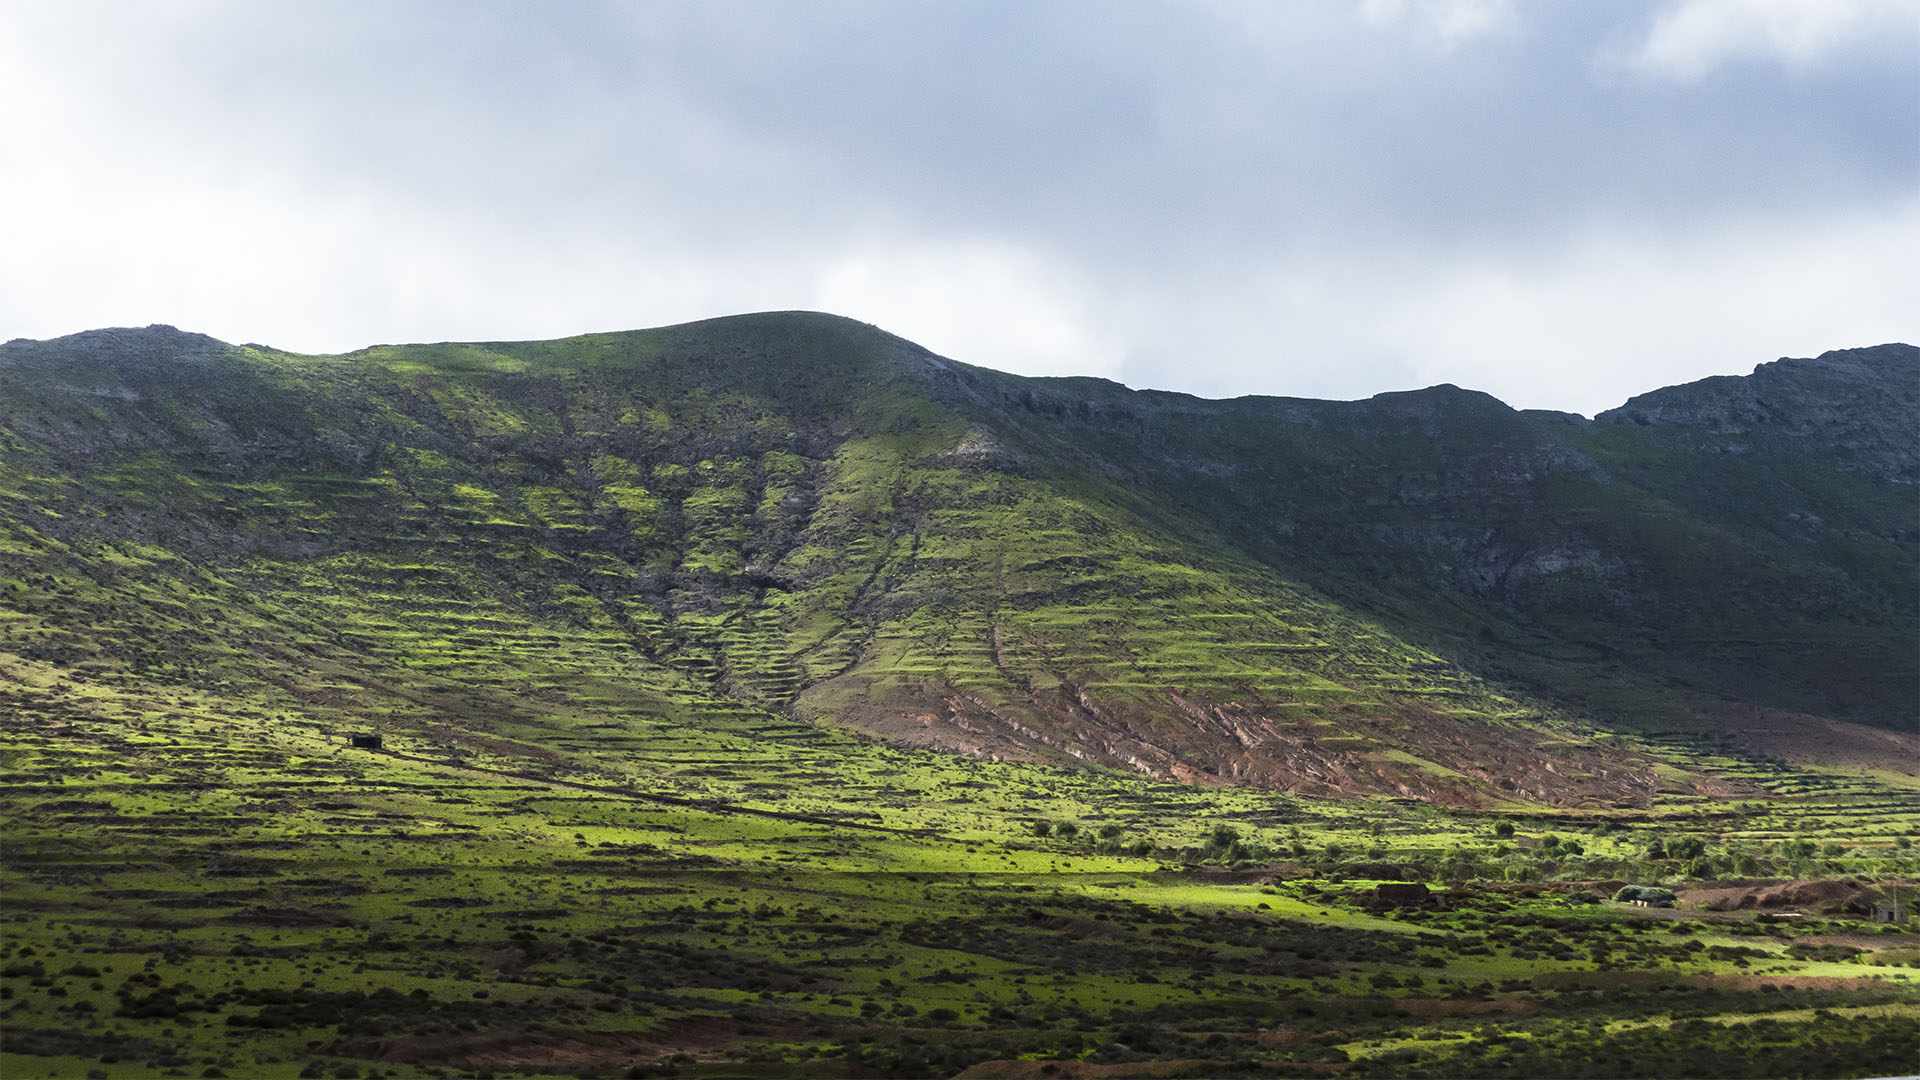 Erstaunlich grün – das Valle de Tetir Fuerteventura nach heftigem Winterregen.